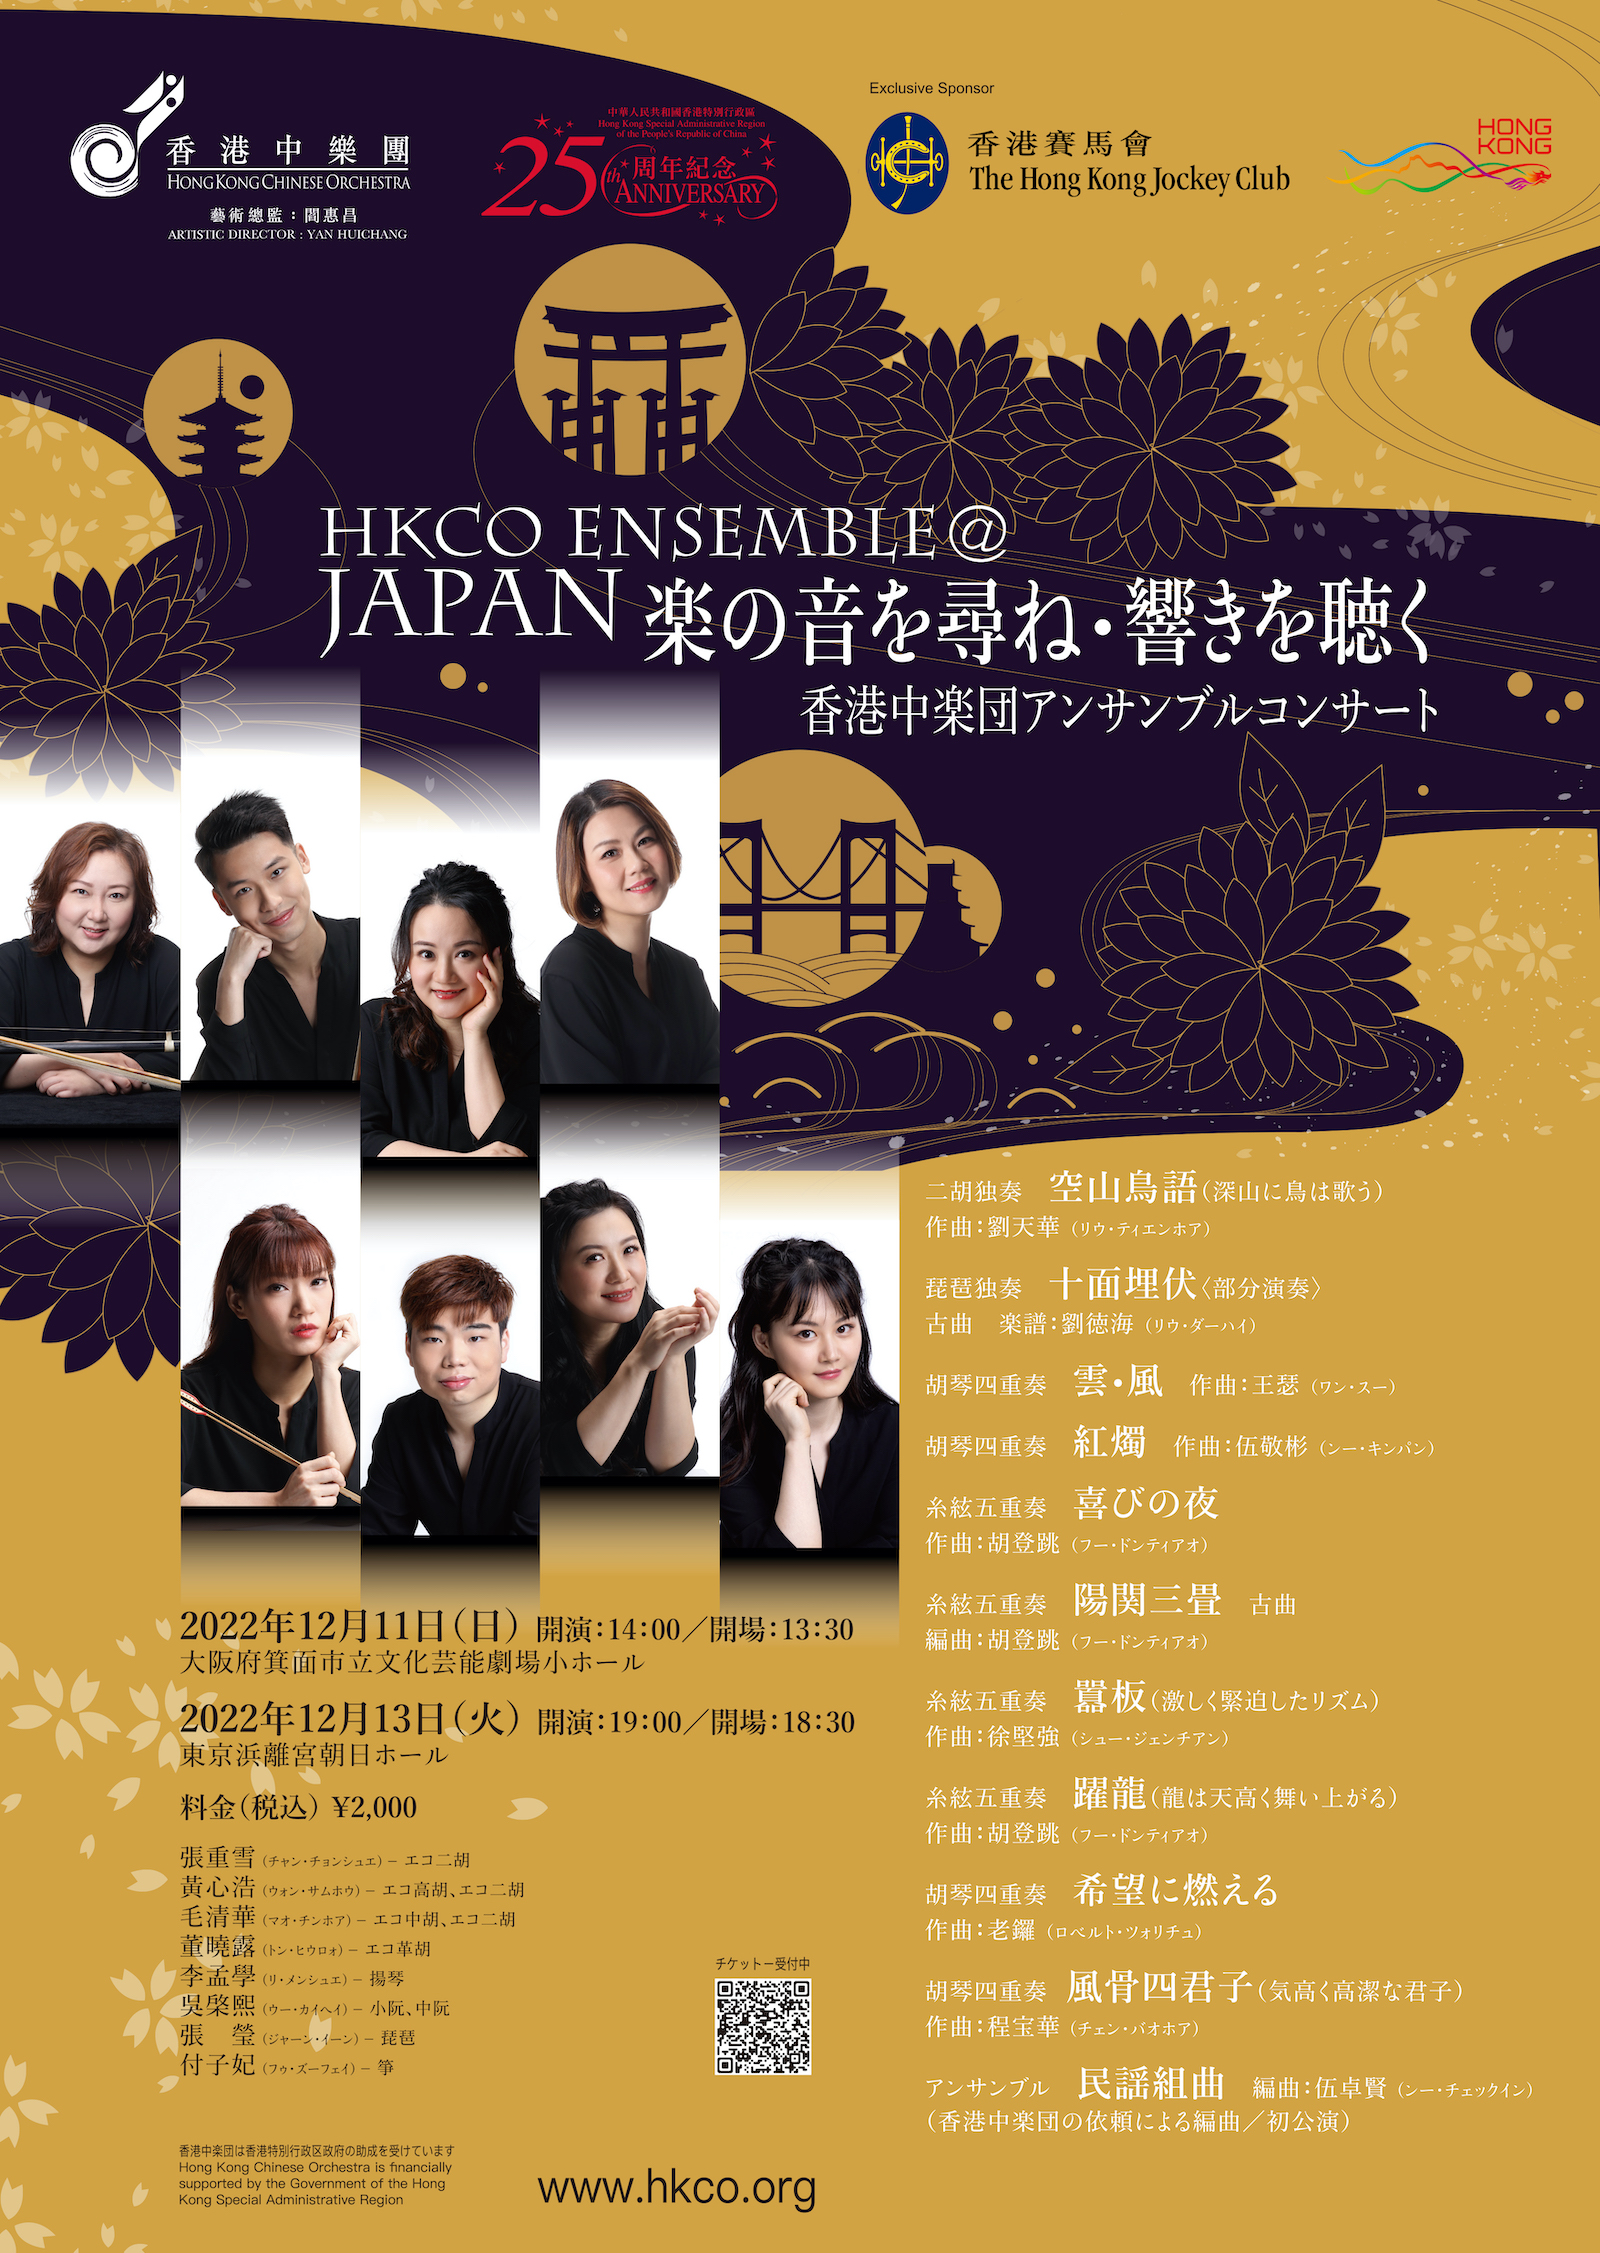 Tour-in-Japan-Janpanese-version-14.11.2022.jpg